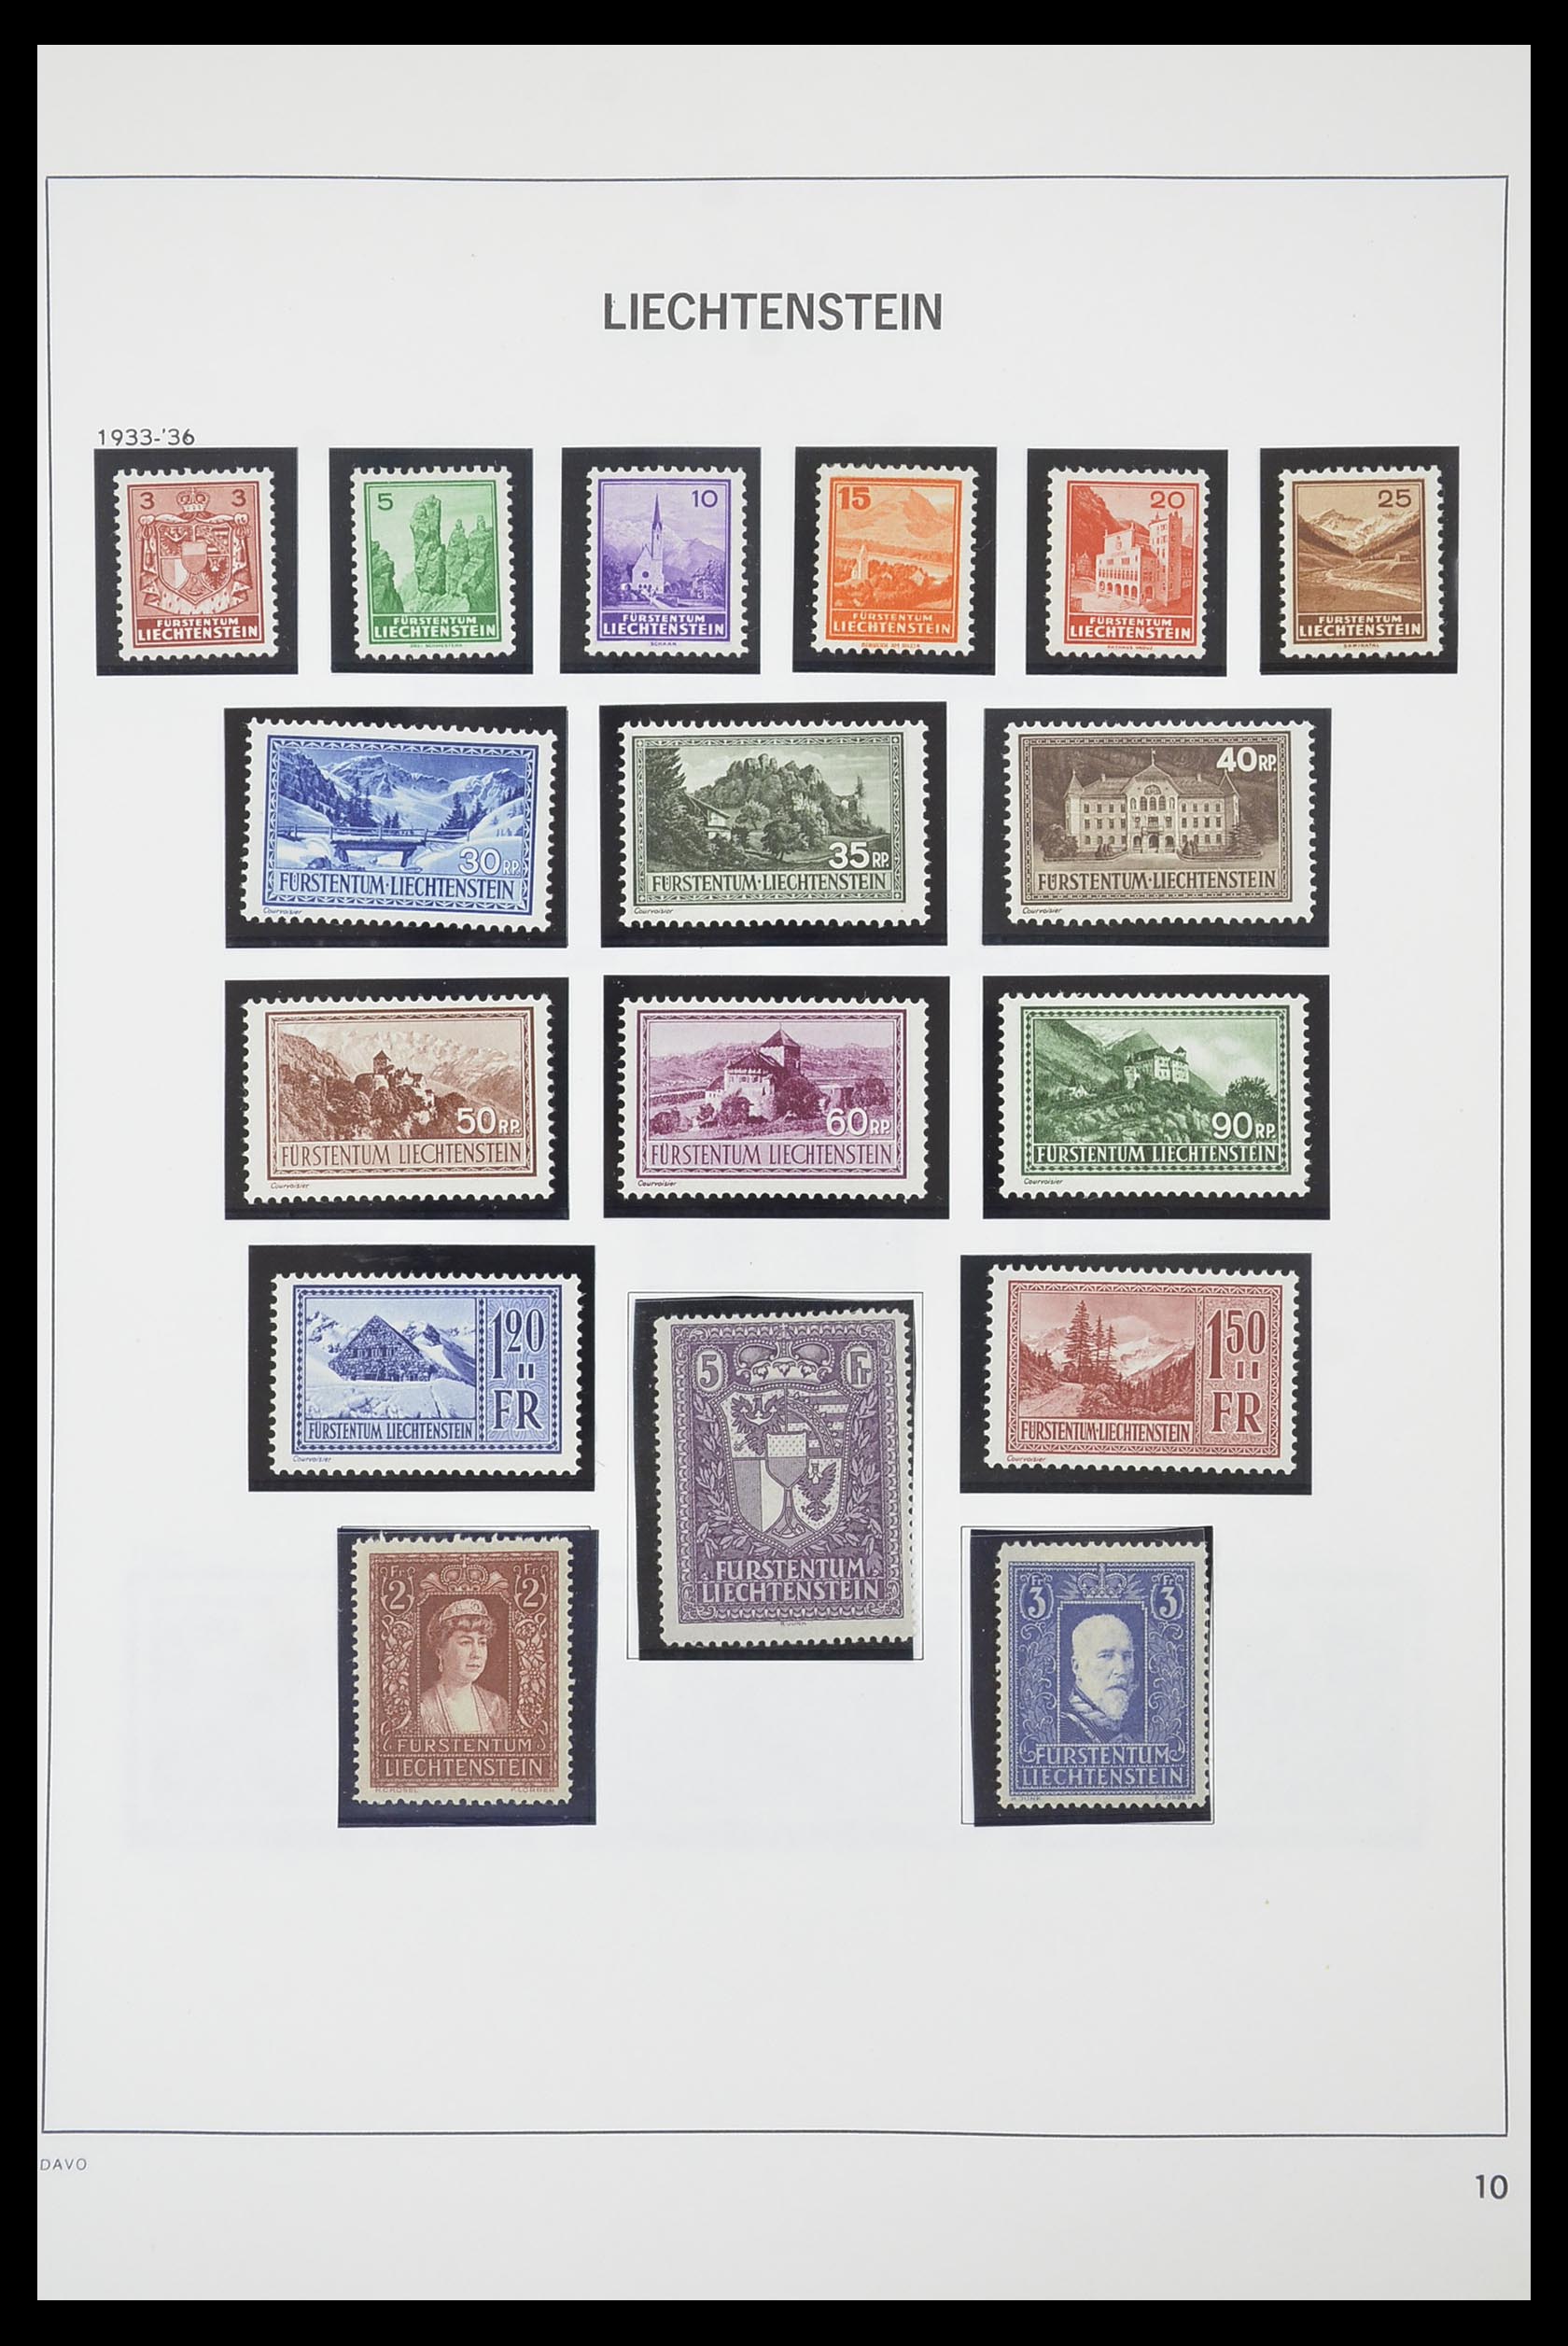 33890 011 - Stamp collection 33890 Liechtenstein 1912-1986.